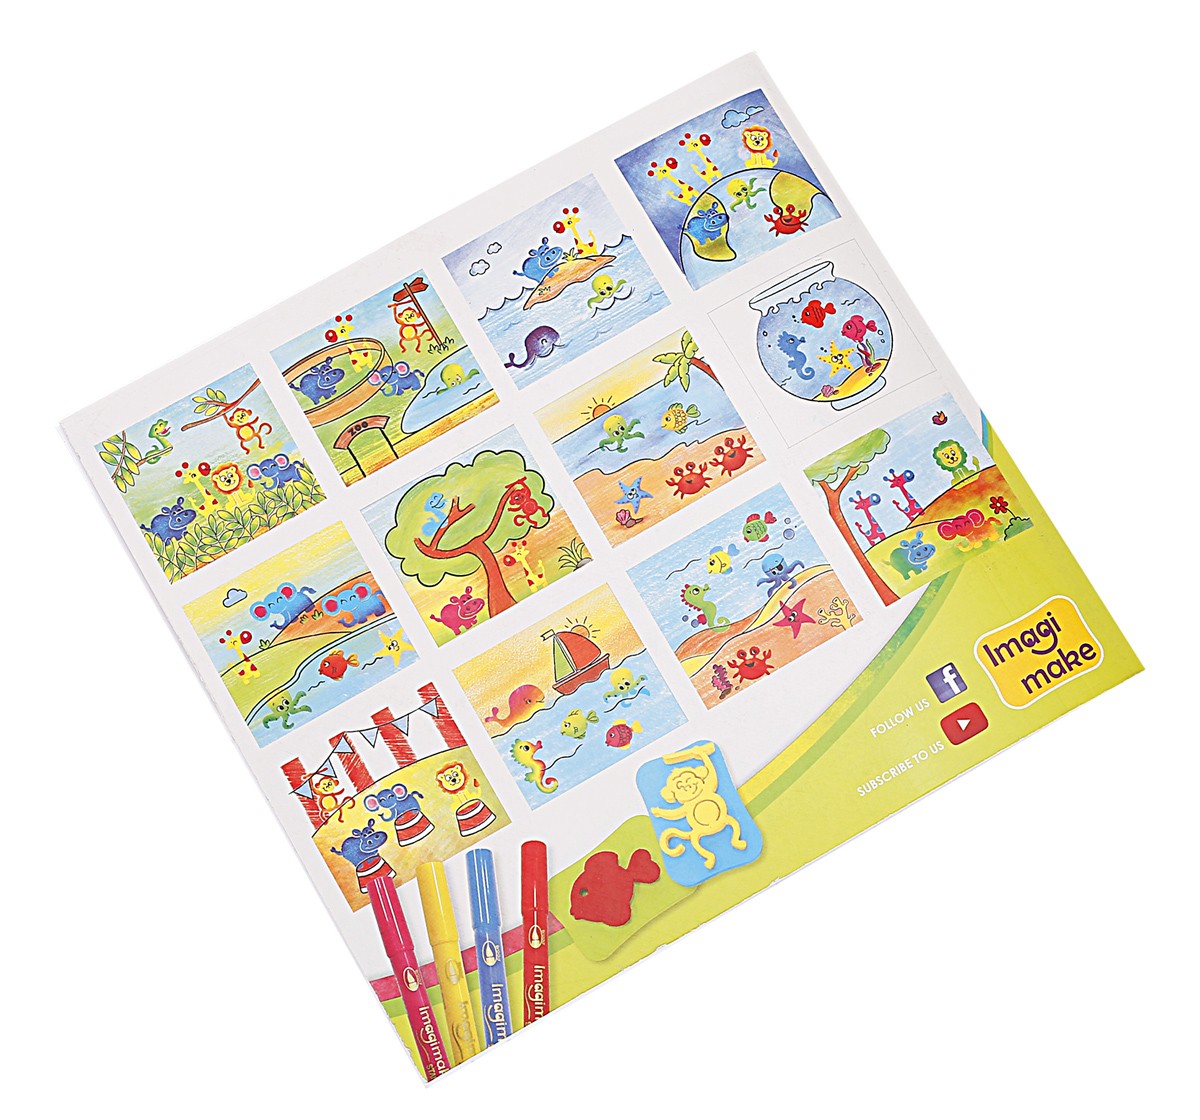 Imagimake Stamp Art Animal Kingdom for kids 3Y+, Multicolour